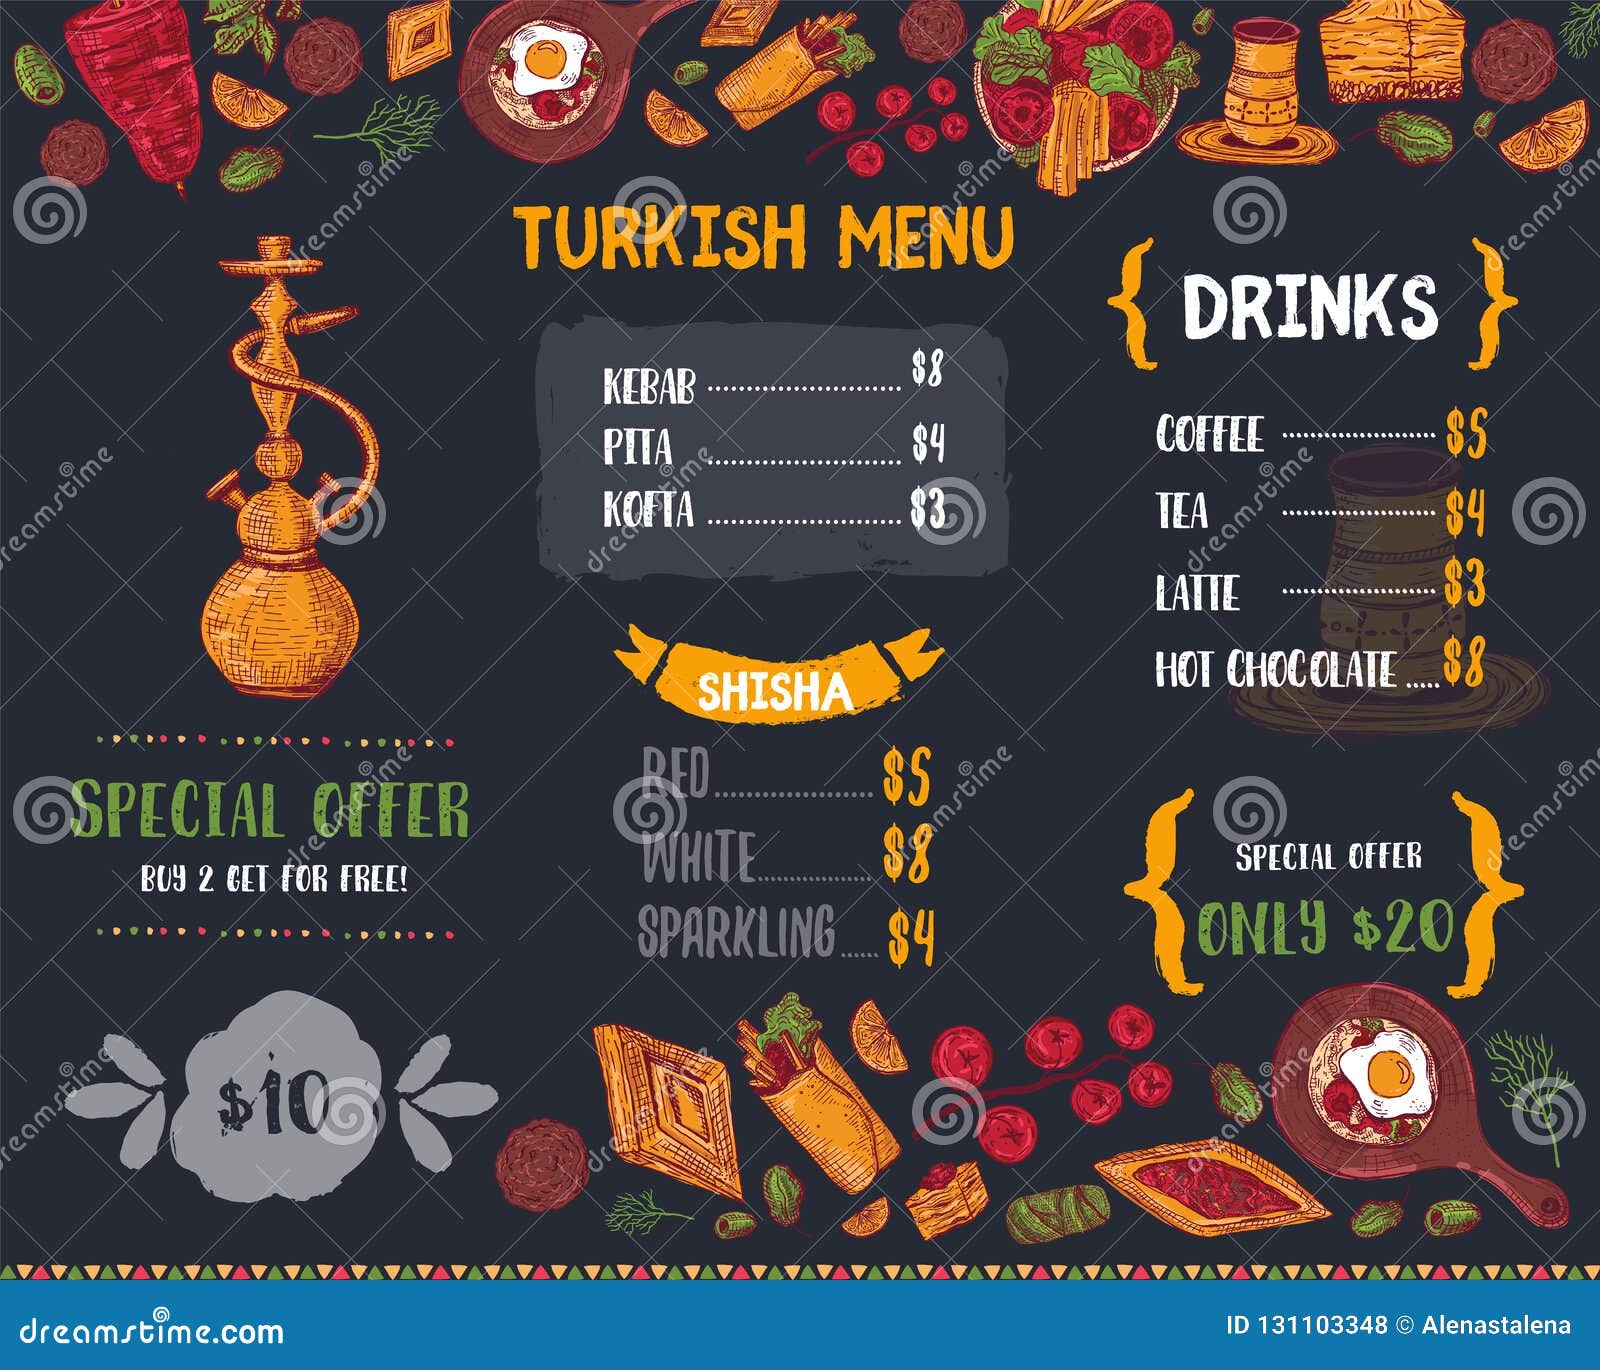 Турецкий ресторан меню. Меню турецкого кафе. Меню турецкого меню. Меню ресторана в Турции. Меню кафе Турция.